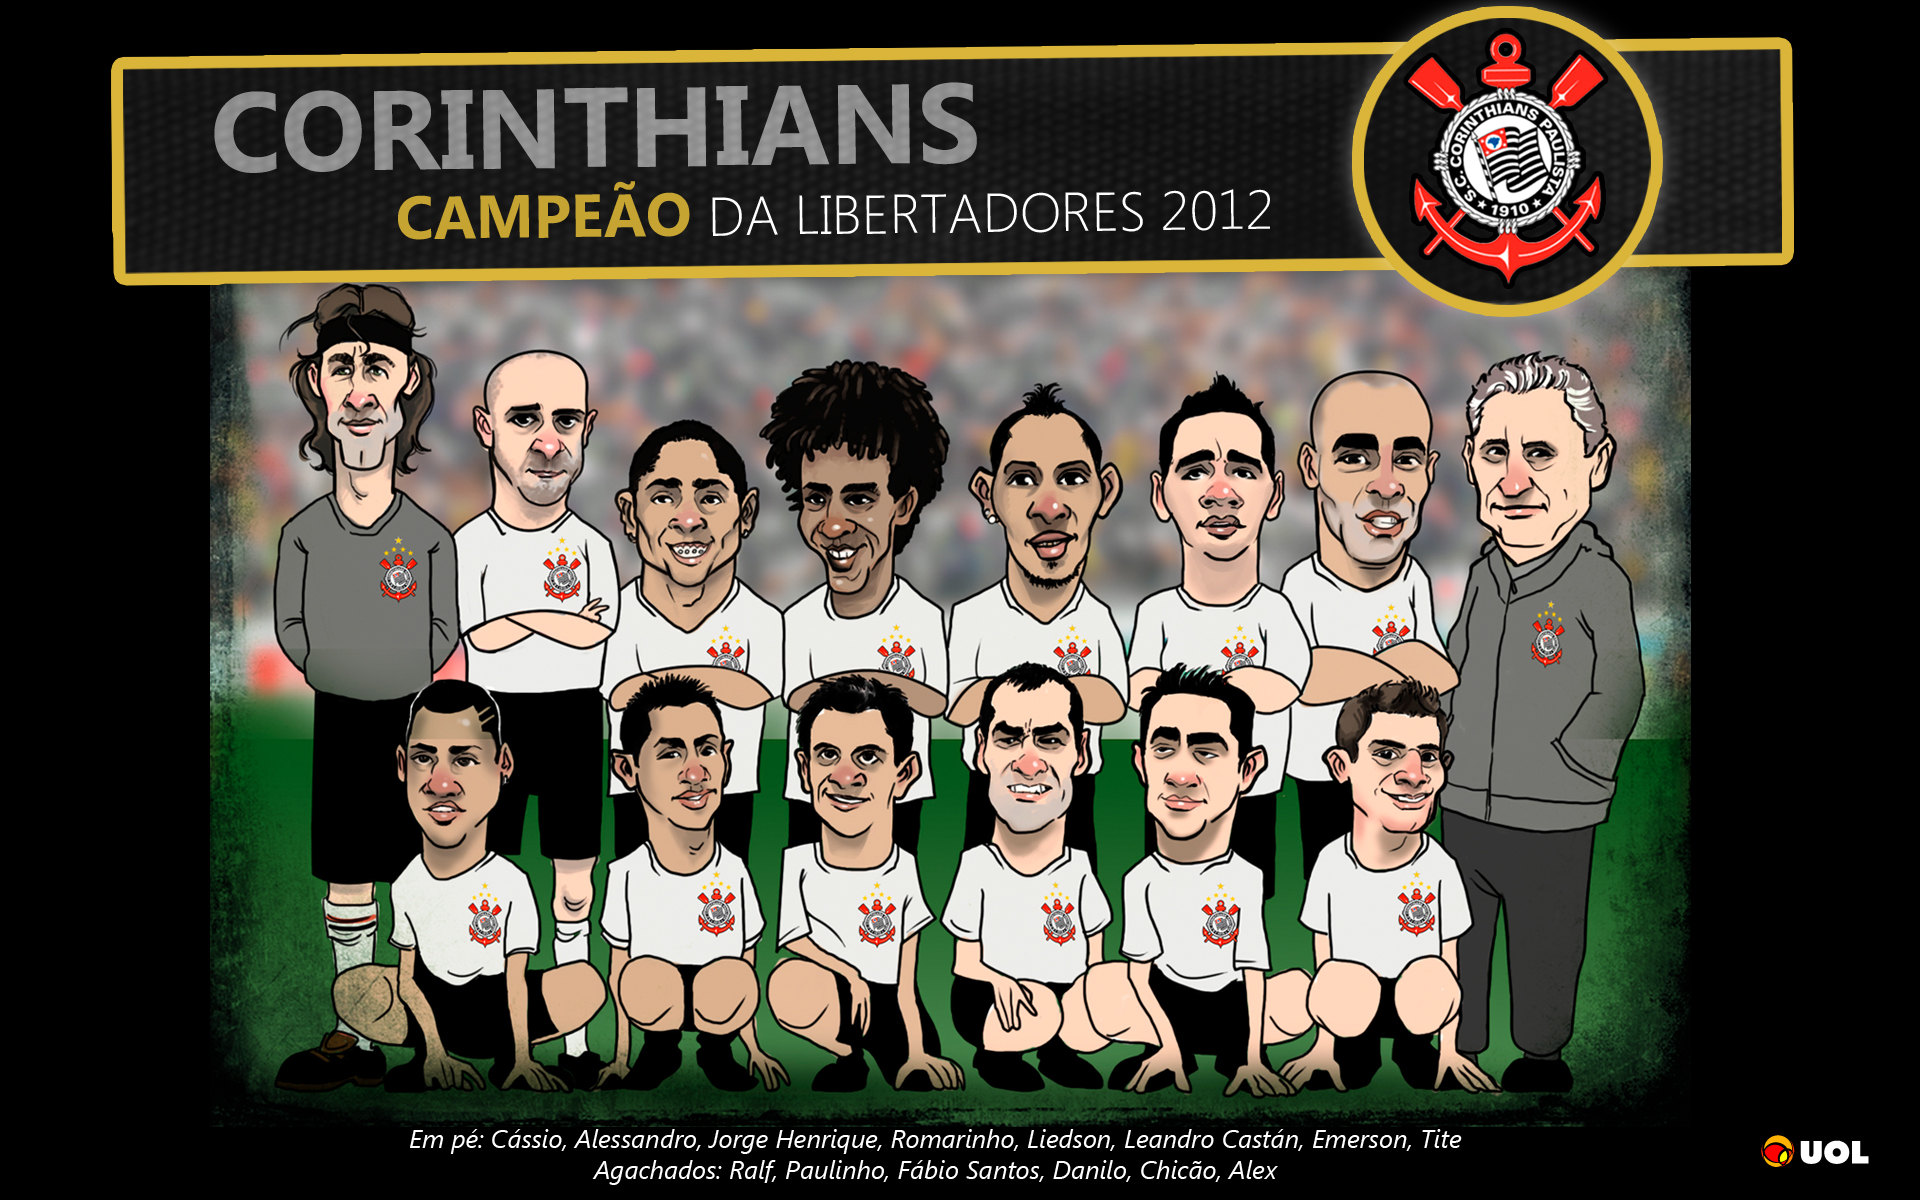 Wallpaper Corinthians Campeão da Libertadores 2012 - 05